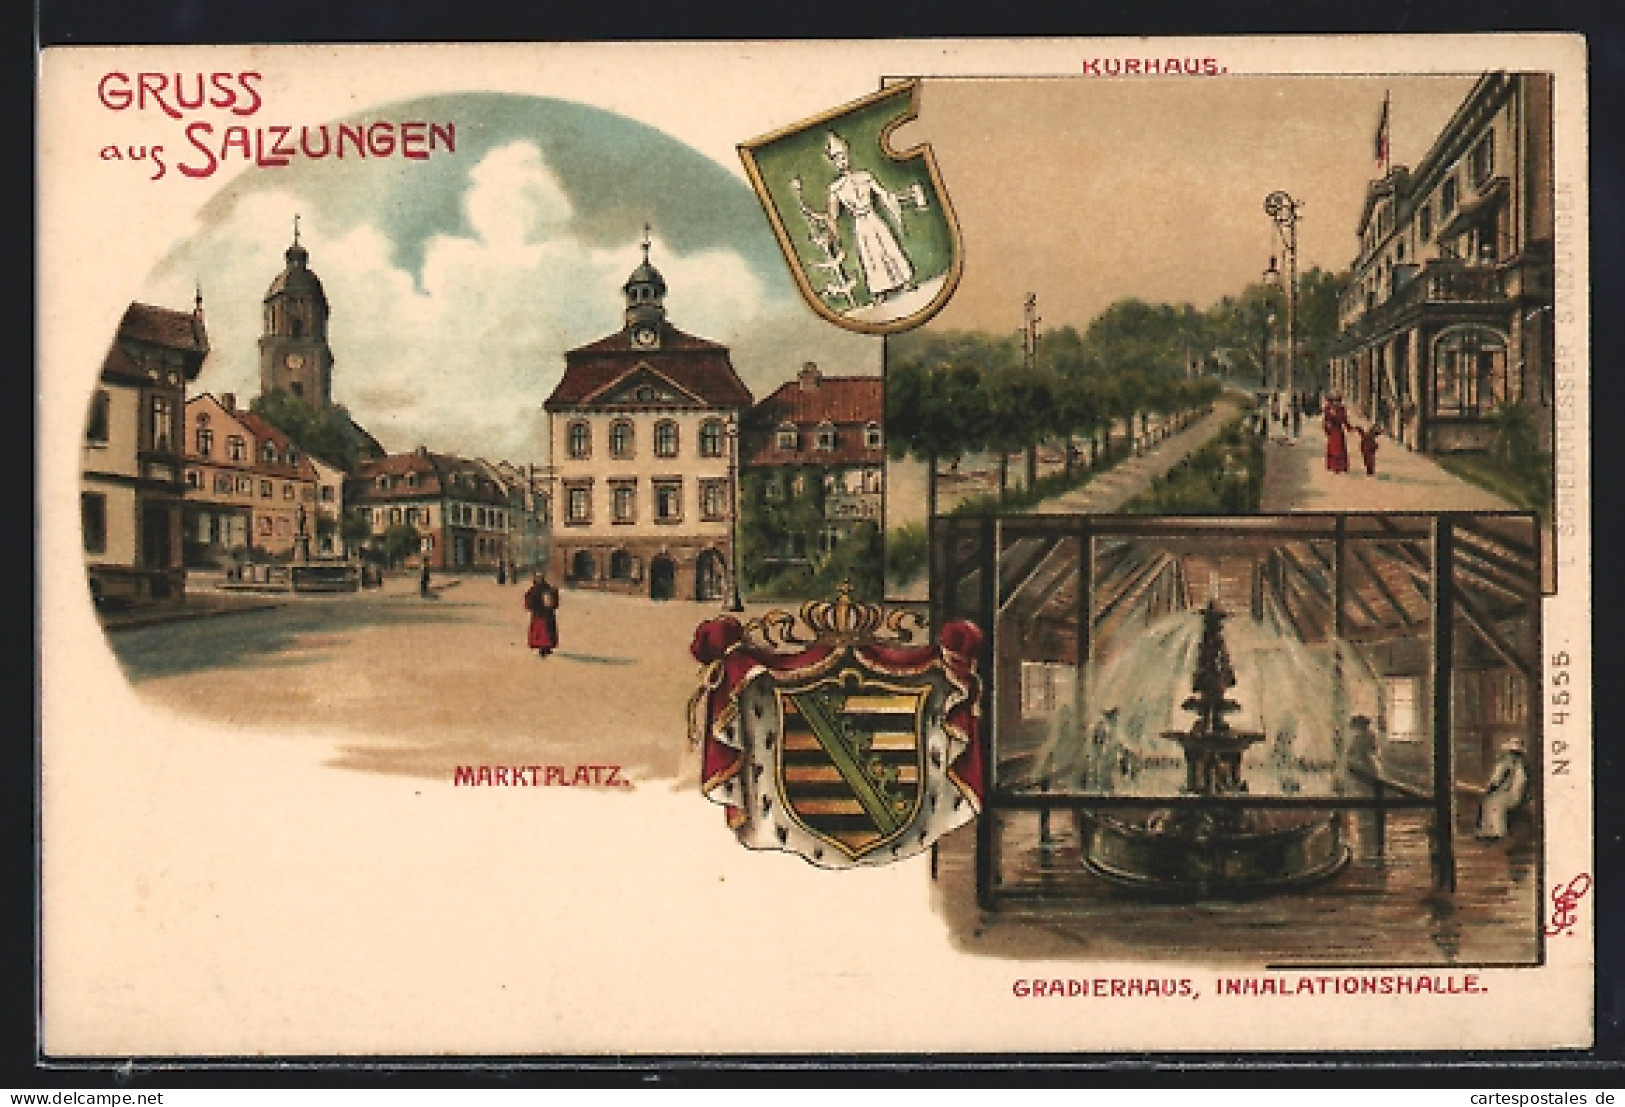 Lithographie Salzungen, Kurhaus, Gradierhaus, Marktplatz, Wappen  - Genealogy